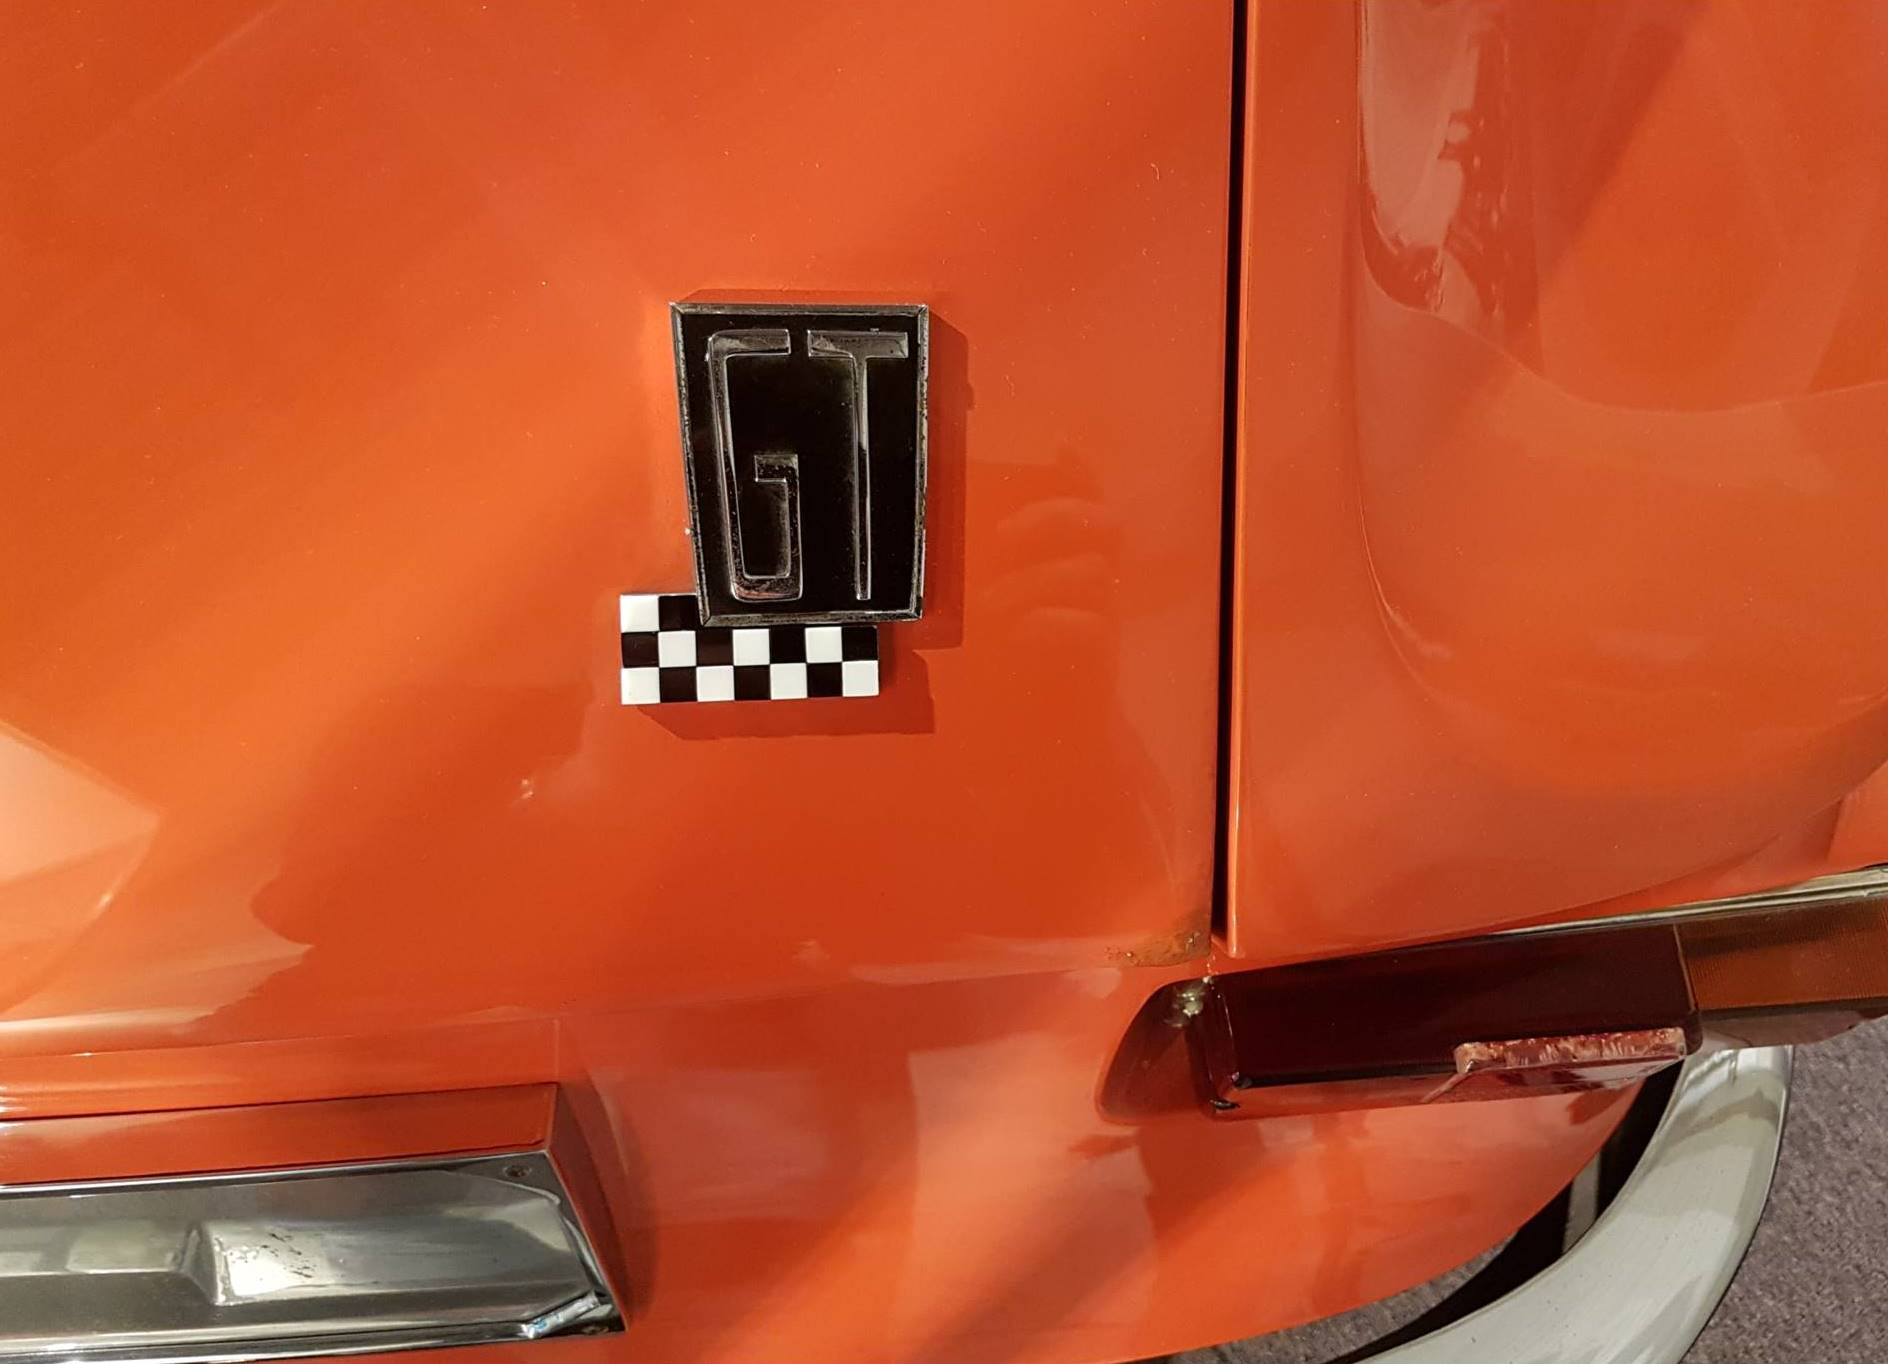 Oranje plaatwerk met een badge ebstaande uit de letters GT en een 'chequered flag'.